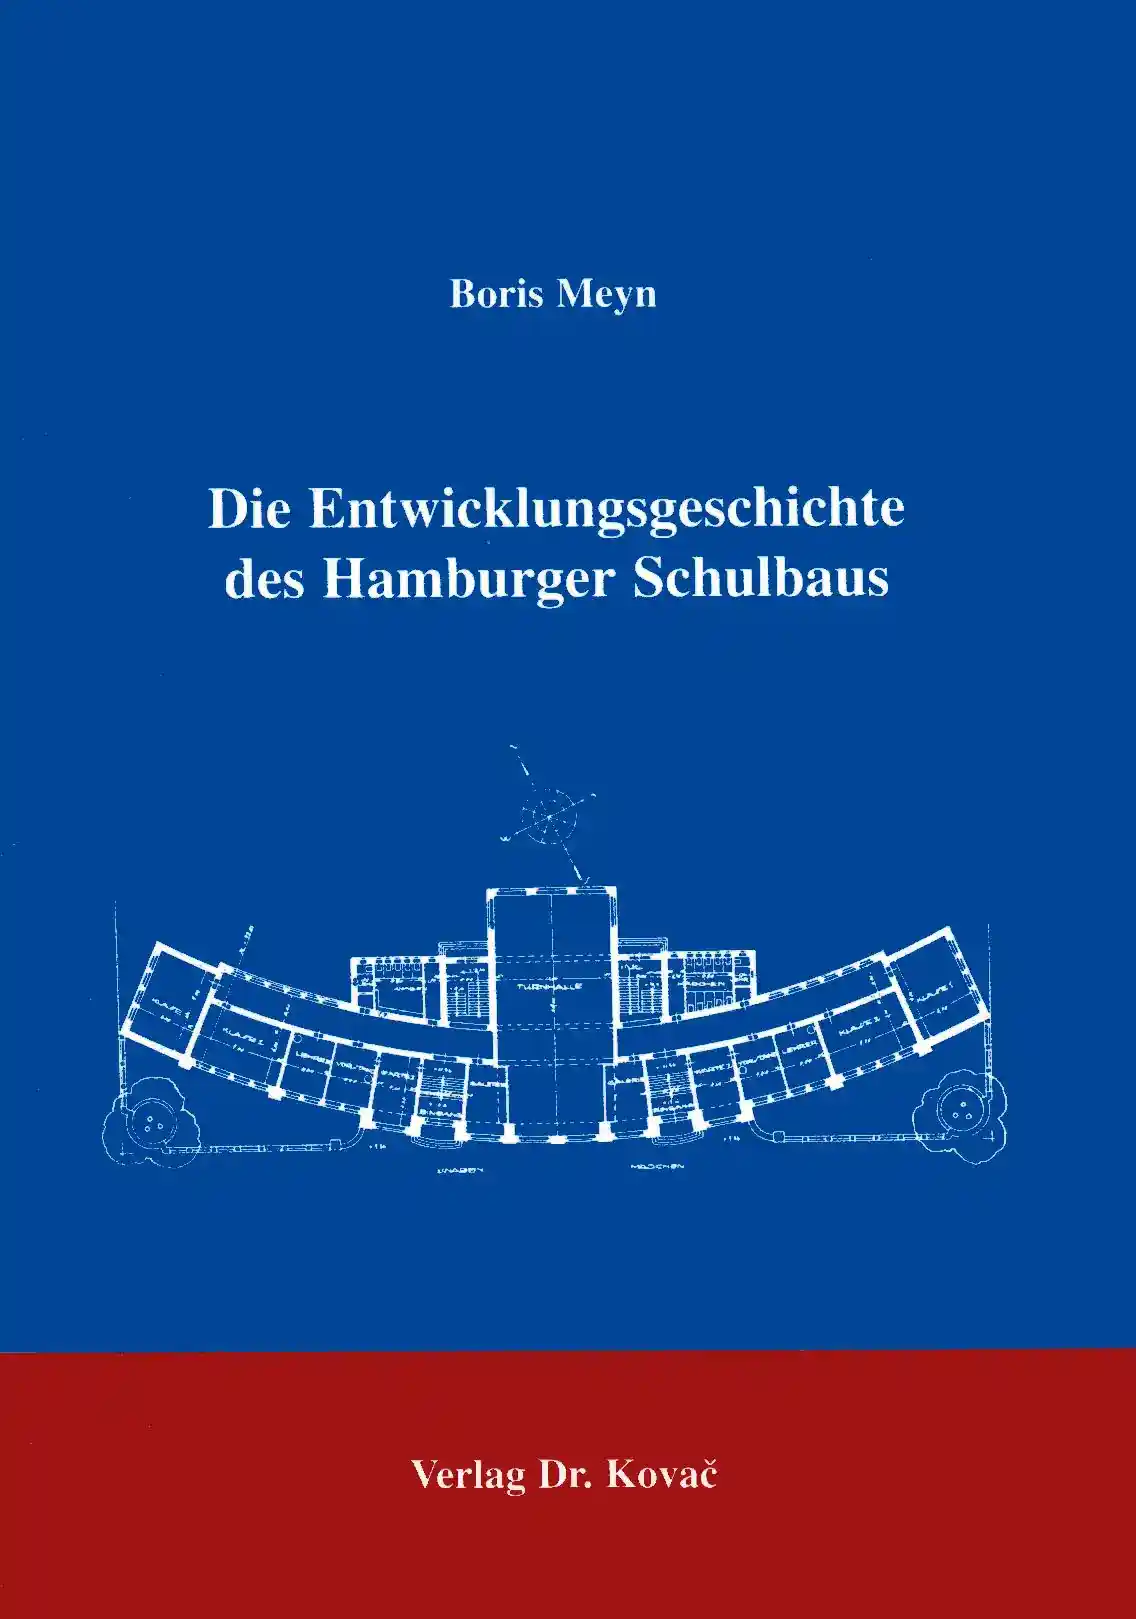 Die Entwicklungsgeschichte des Hamburger Schulbaus (Forschungsarbeit)